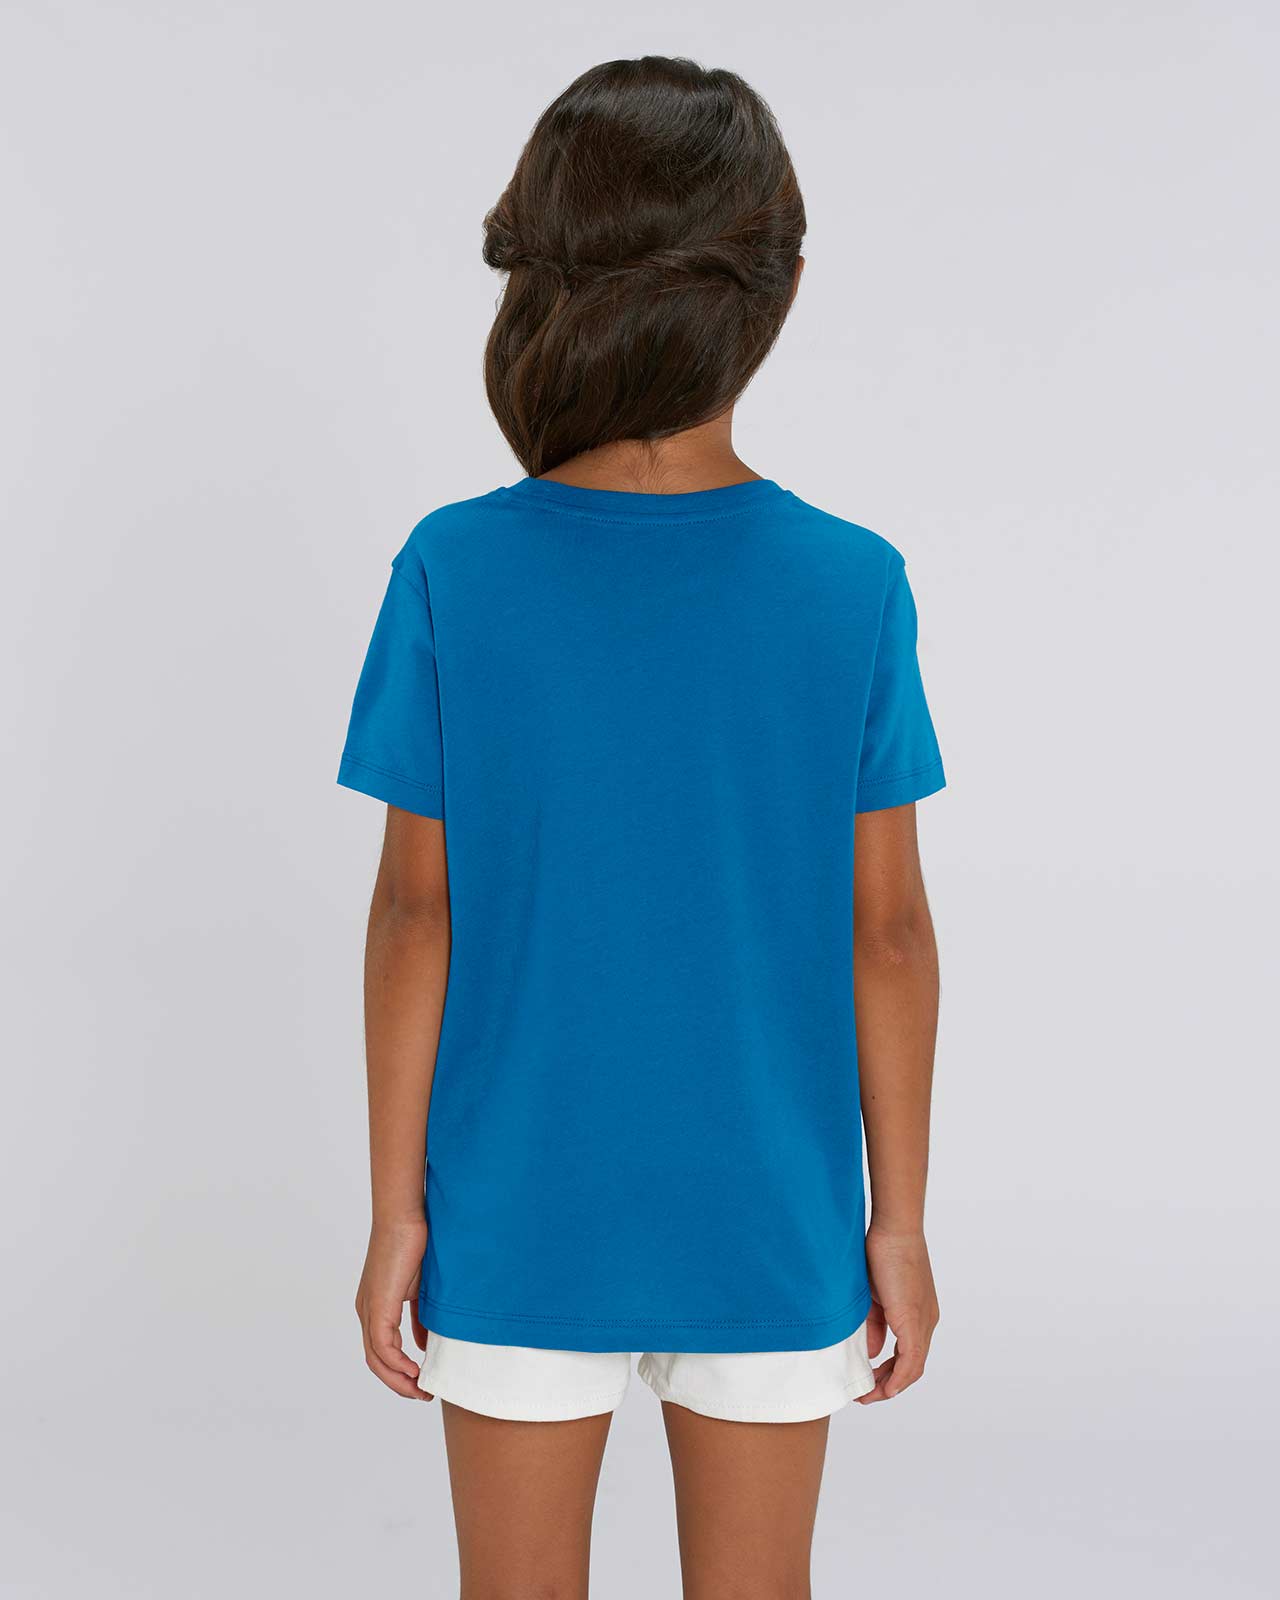 Blaues T-Shirt für Mädchen und Jungen - Biobaumwolle